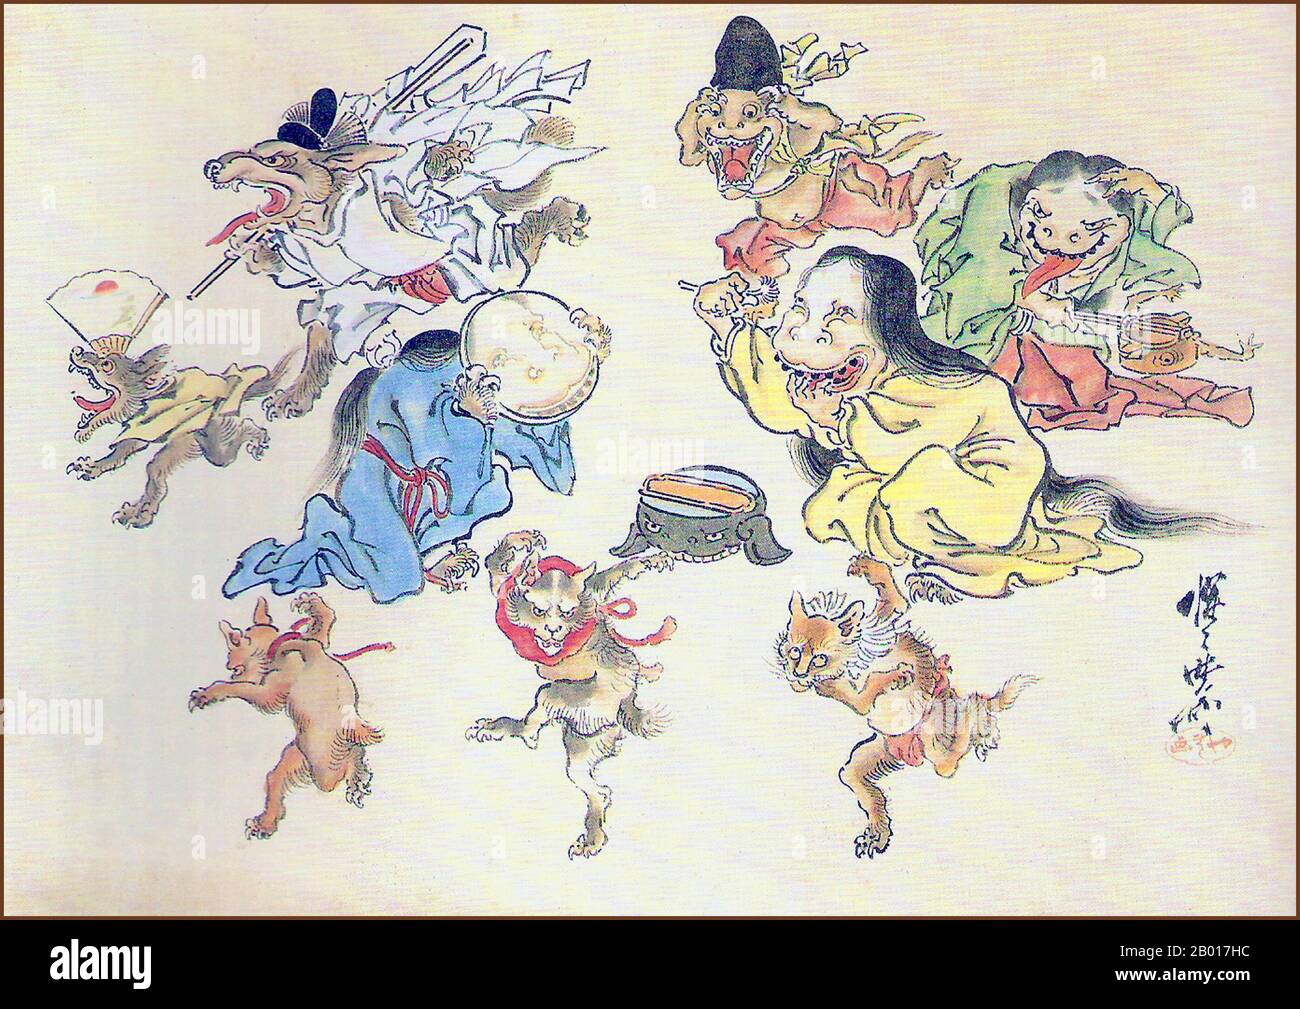 Japan: „Hyakki Yako (Nachtparade der hundert Dämonen)“. Detail der Handrollmalerei von Kawanabe Kyosai (18. Mai 1831 - 26. April 1889), 19th. Jahrhundert. Hyakki Yagyo/Hyakki Yako („Nachtparade der hundert Dämonen“) ist ein japanischer Volksglaube. Der Glaube besagt, dass Yokai, japanische übernatürliche Wesen, jedes Jahr während der Sommernächte auf die Straße gehen werden. Die Prozession ist manchmal ordentlich, während es zu anderen Zeiten ein Aufruhr ist. Jeder, der auf die Prozession trifft, wird sterben, es sei denn, er wird von einem buddhistischen Sutra beschützt. Es ist ein beliebtes Thema in der japanischen bildenden Kunst Stockfoto